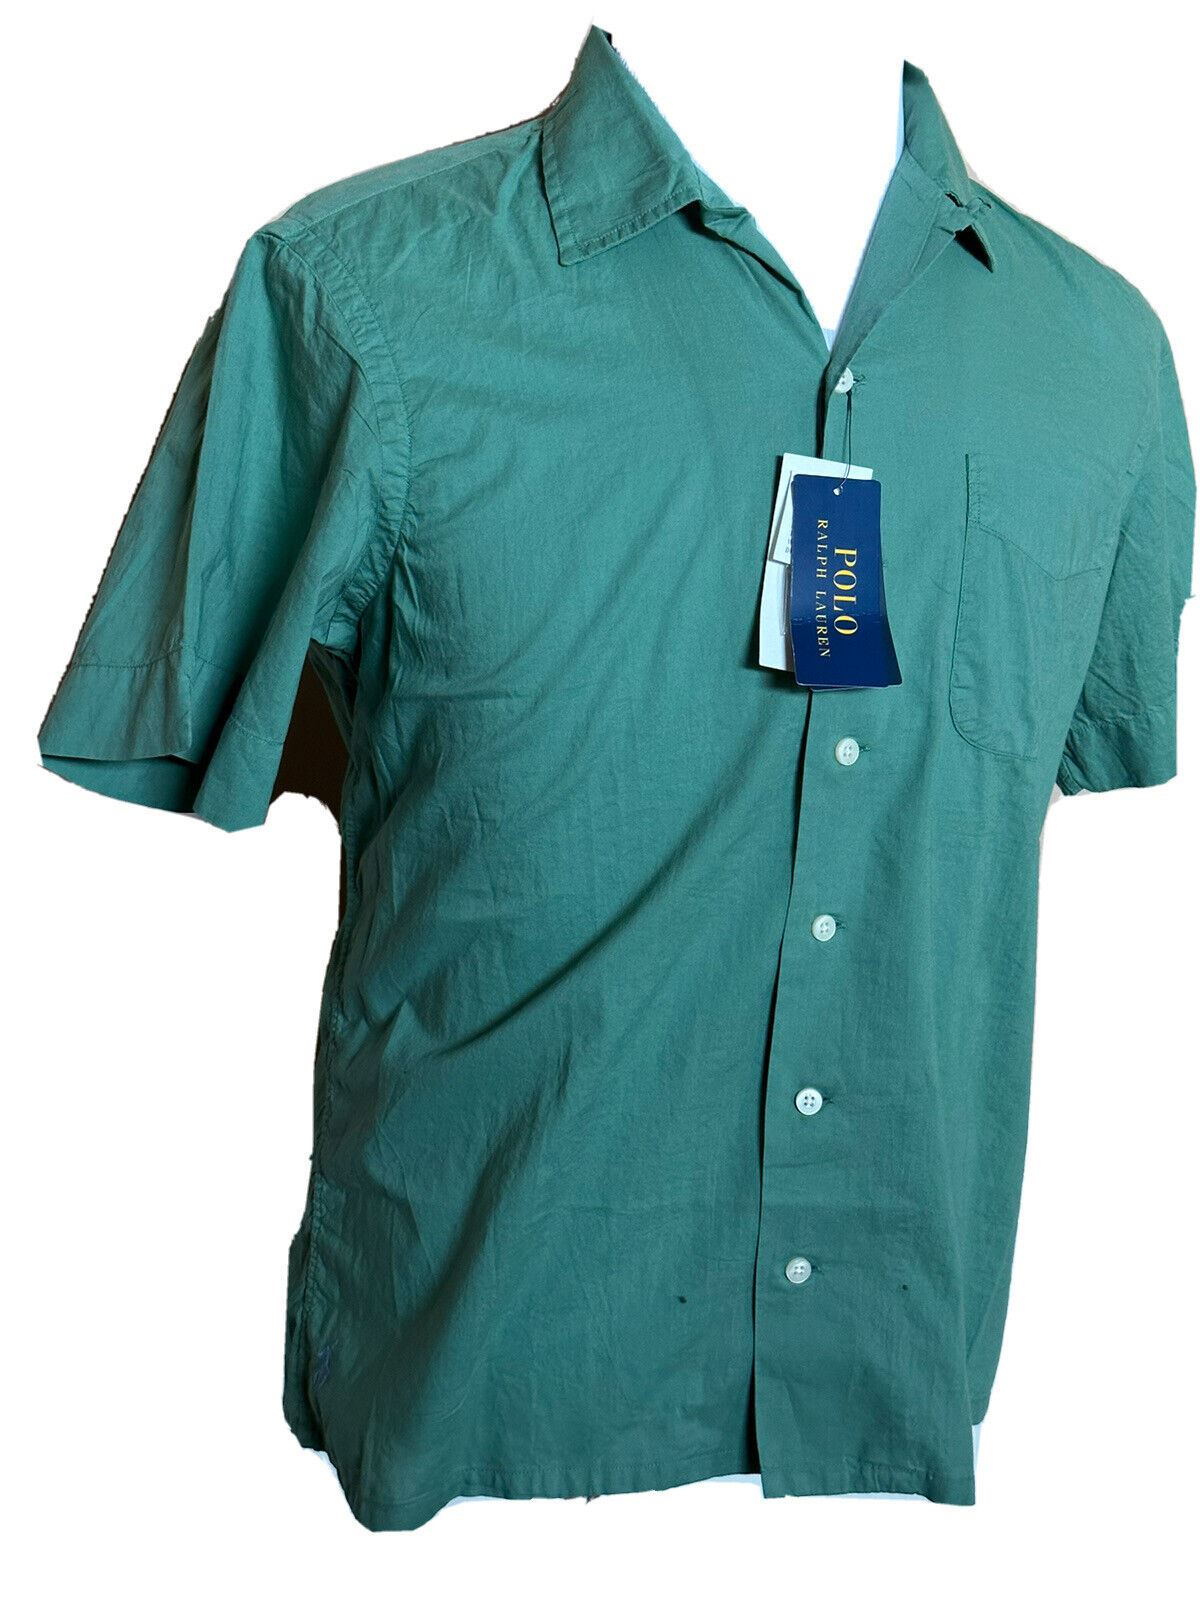 Neu mit Etikett: Polo Ralph Lauren Herren-Hemd, grün, kurzärmelig, Größe L, hergestellt in Indien